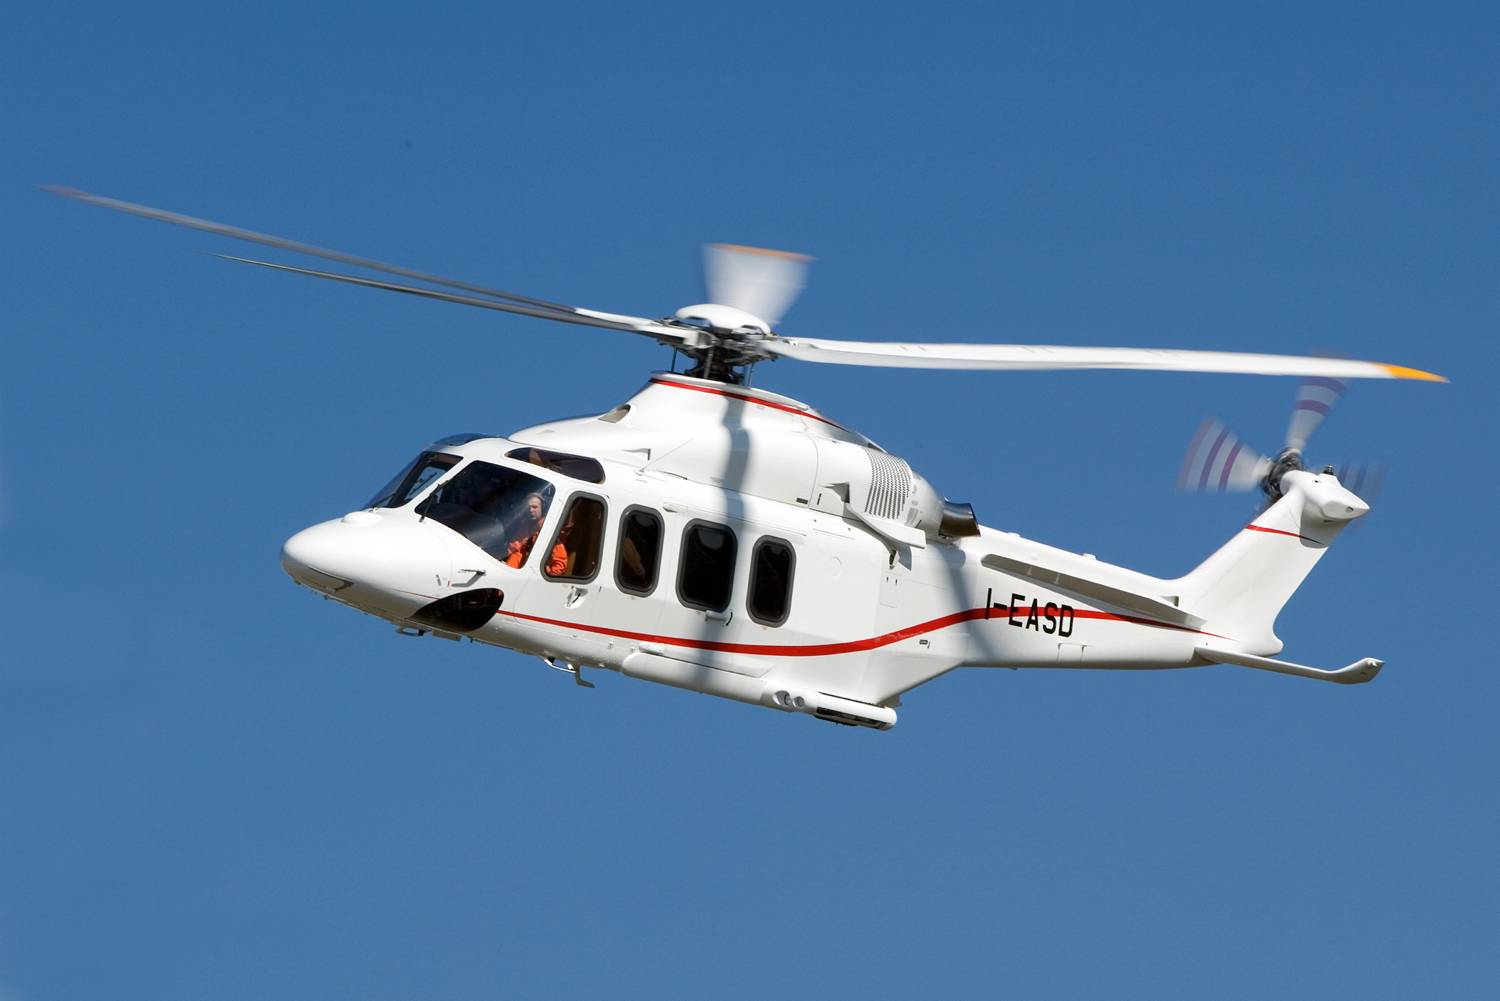 Вертолет agustawestland aw139: летно‑технические характеристики